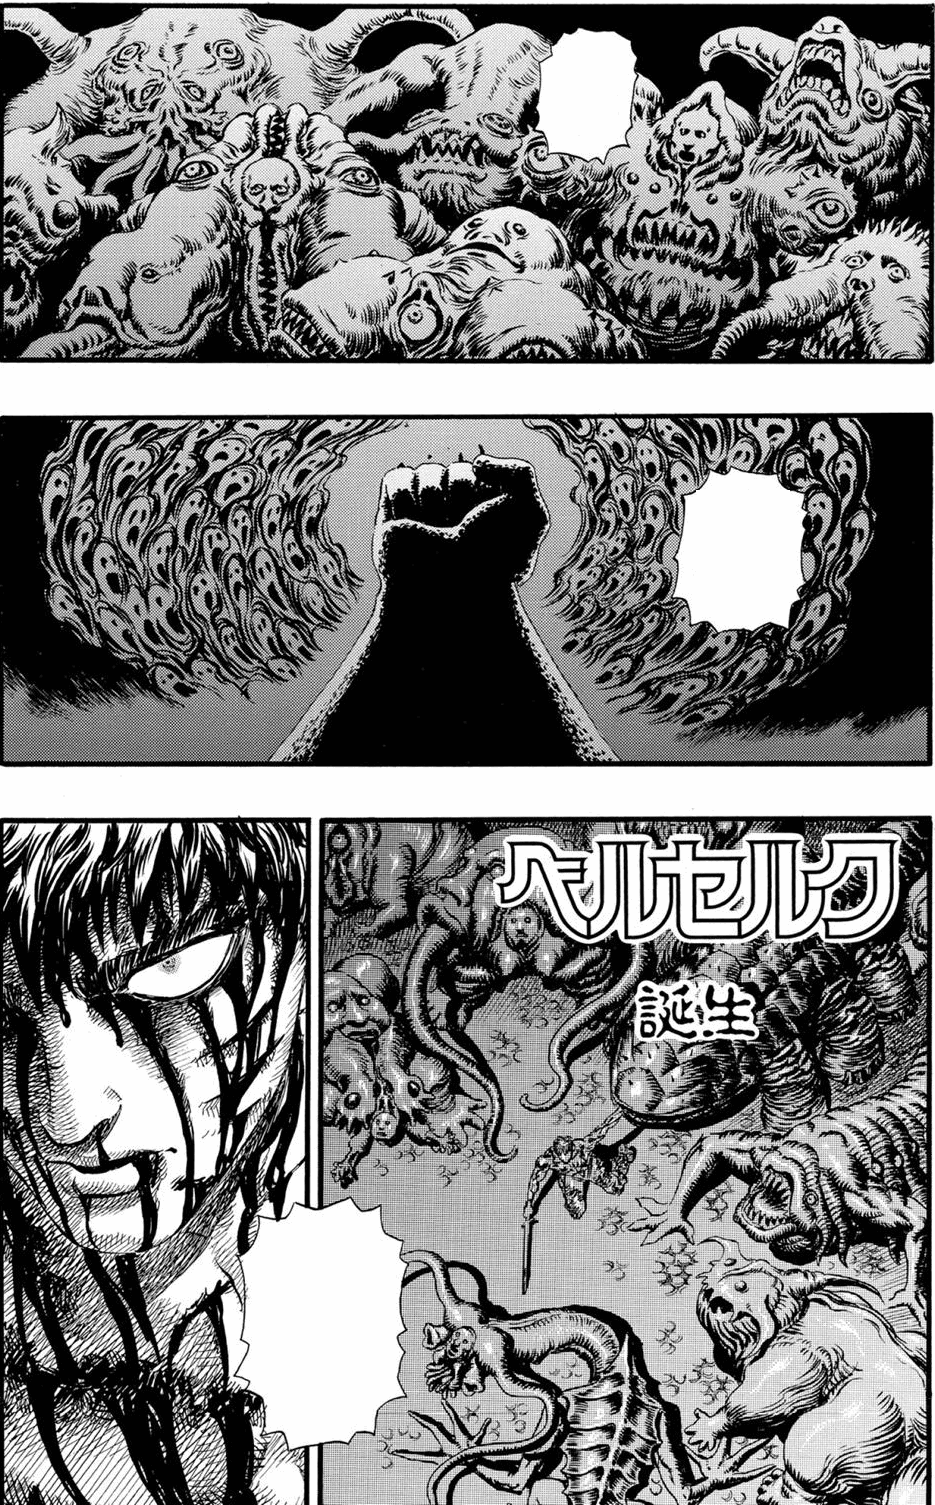 Berserk (manga) - Wikipedia